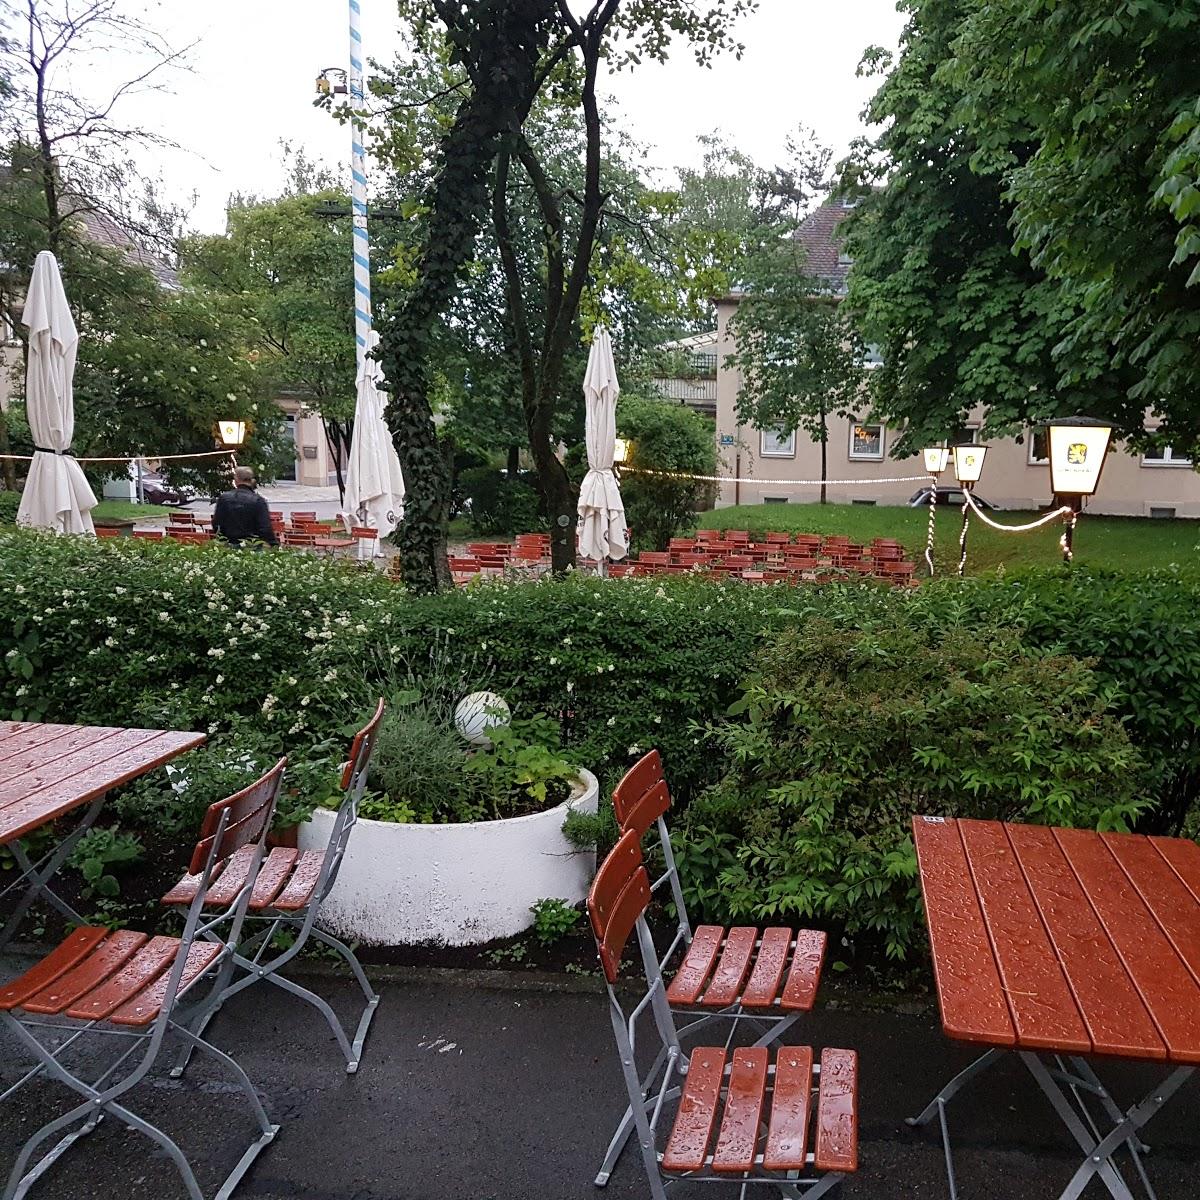 Restaurant "Gasthaus zum Maibaum" in München